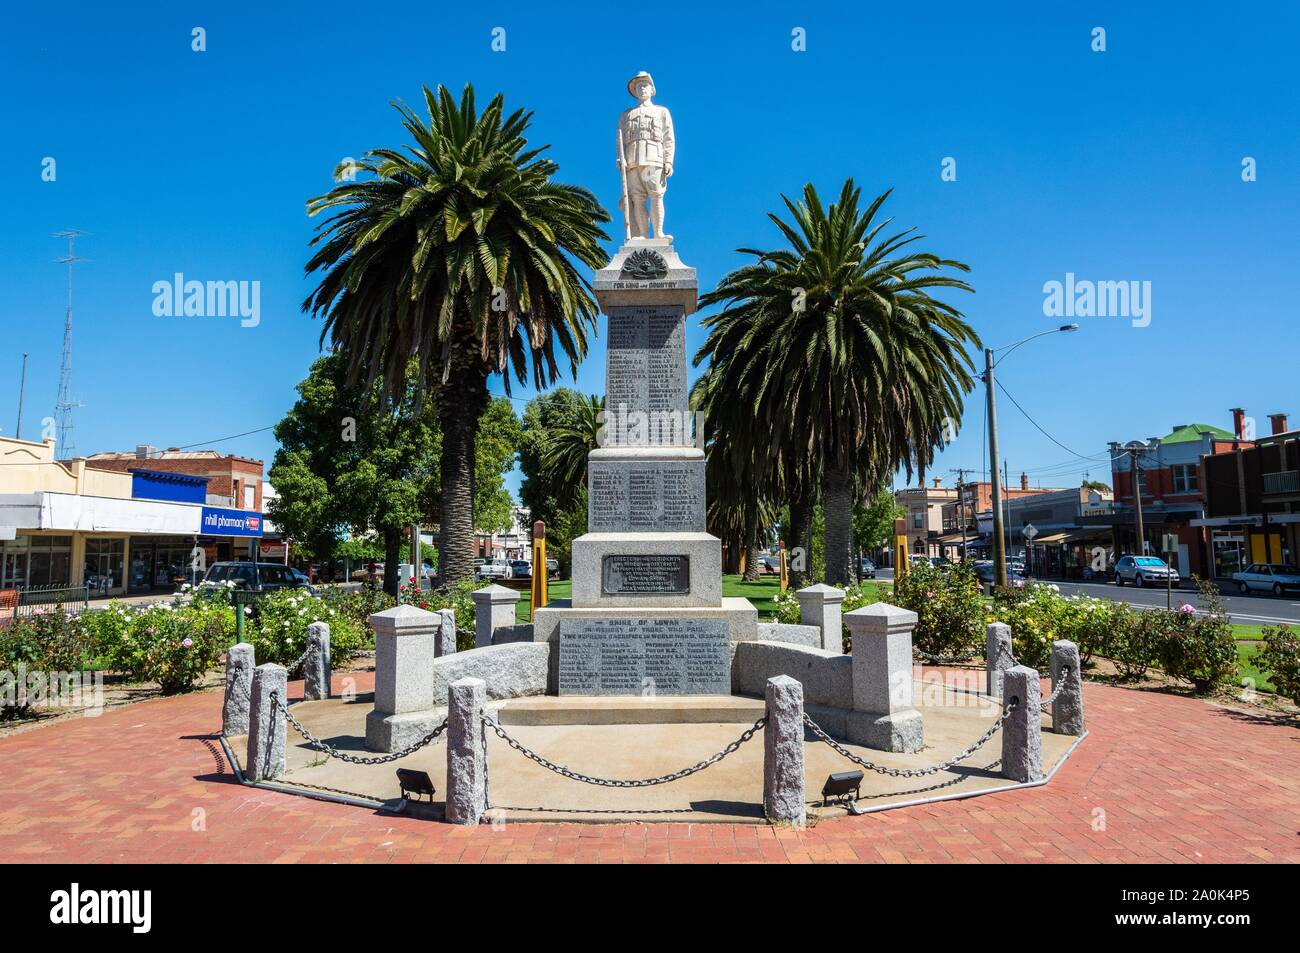 Nhill, Victoria, Australie - le 3 mars 2017. Monument commémoratif de guerre dans le centre-ville de Nhill, Victoria, avec les bâtiments et les voitures. Banque D'Images